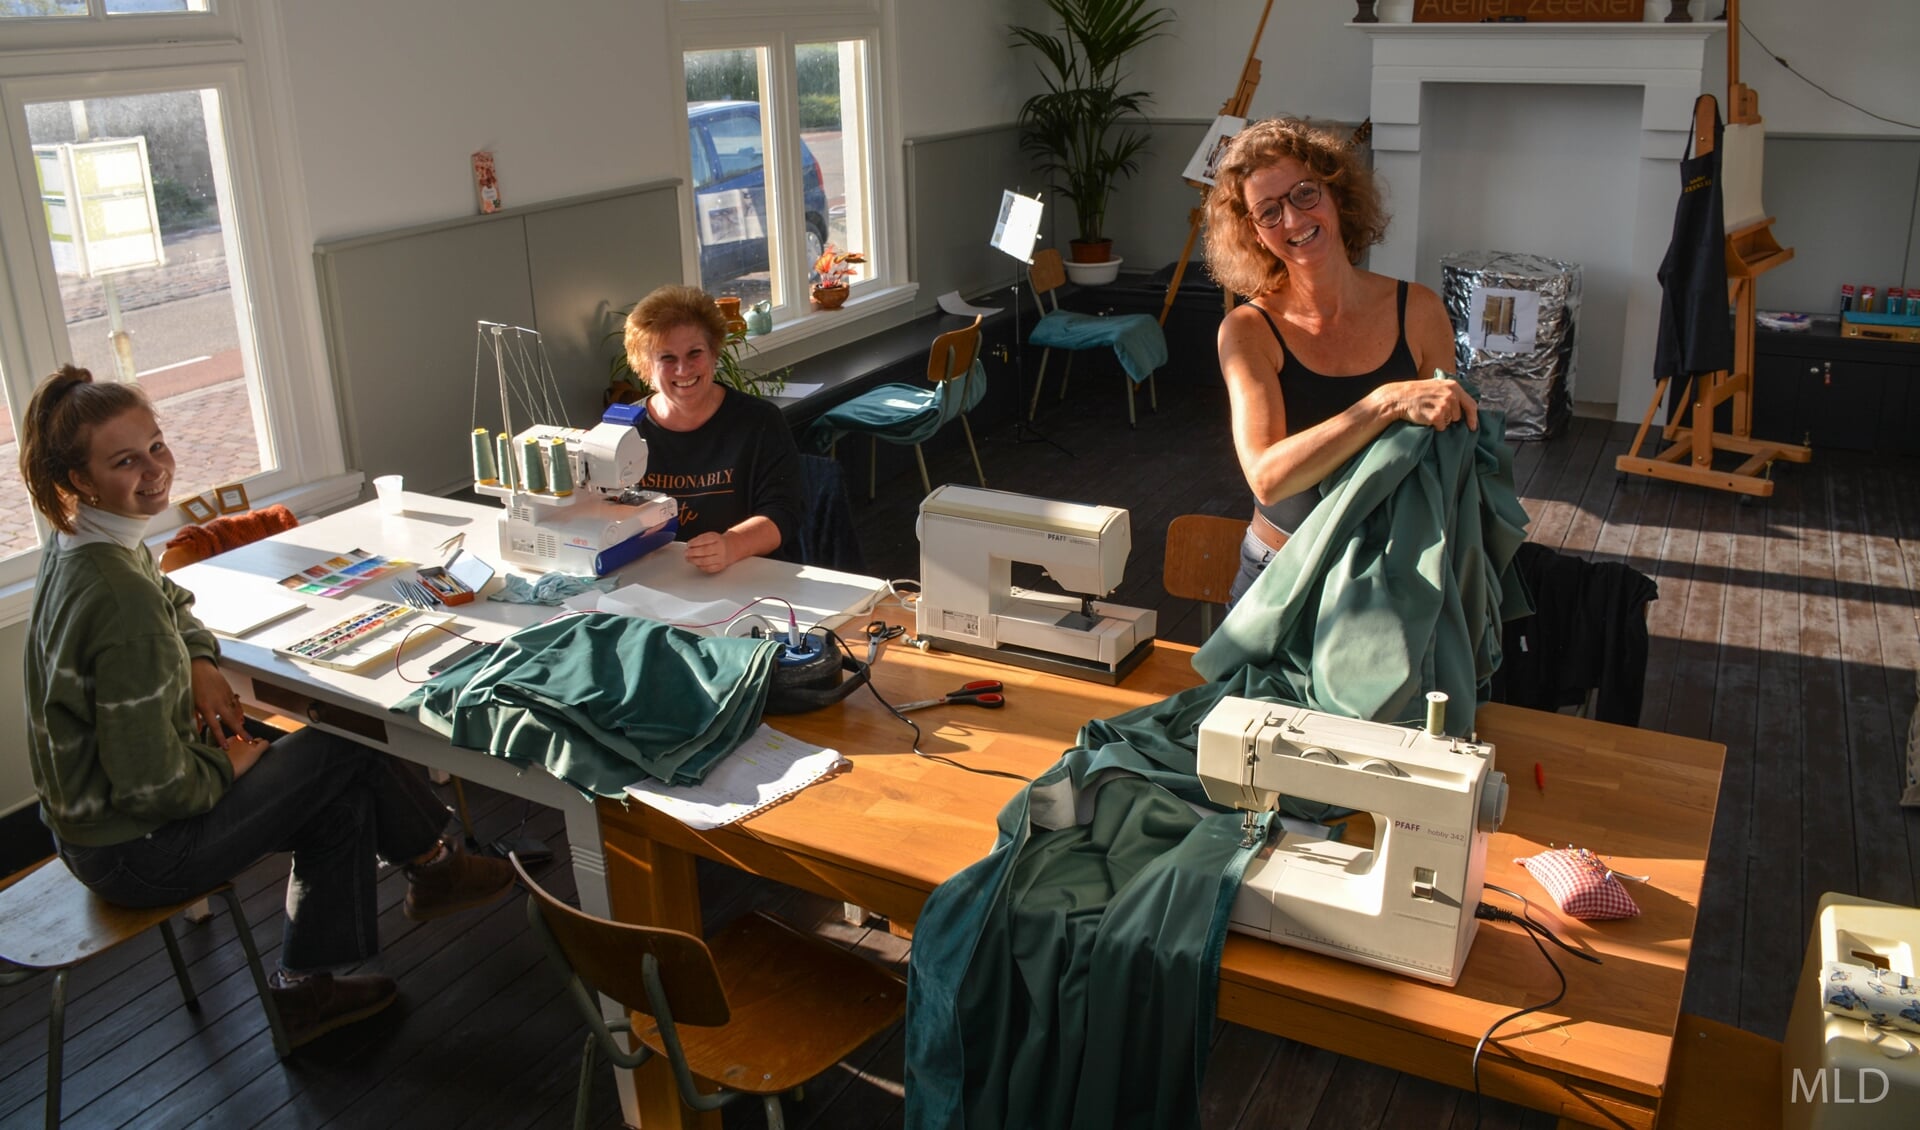 Rechts: Francé Wilbrink (uit Deurne), links: Marga Sentjes (uit Rilland) helpen mee met het naaien van de gordijnen. Linksvoor:Elisa Wilbrink assisteert waar nodig.